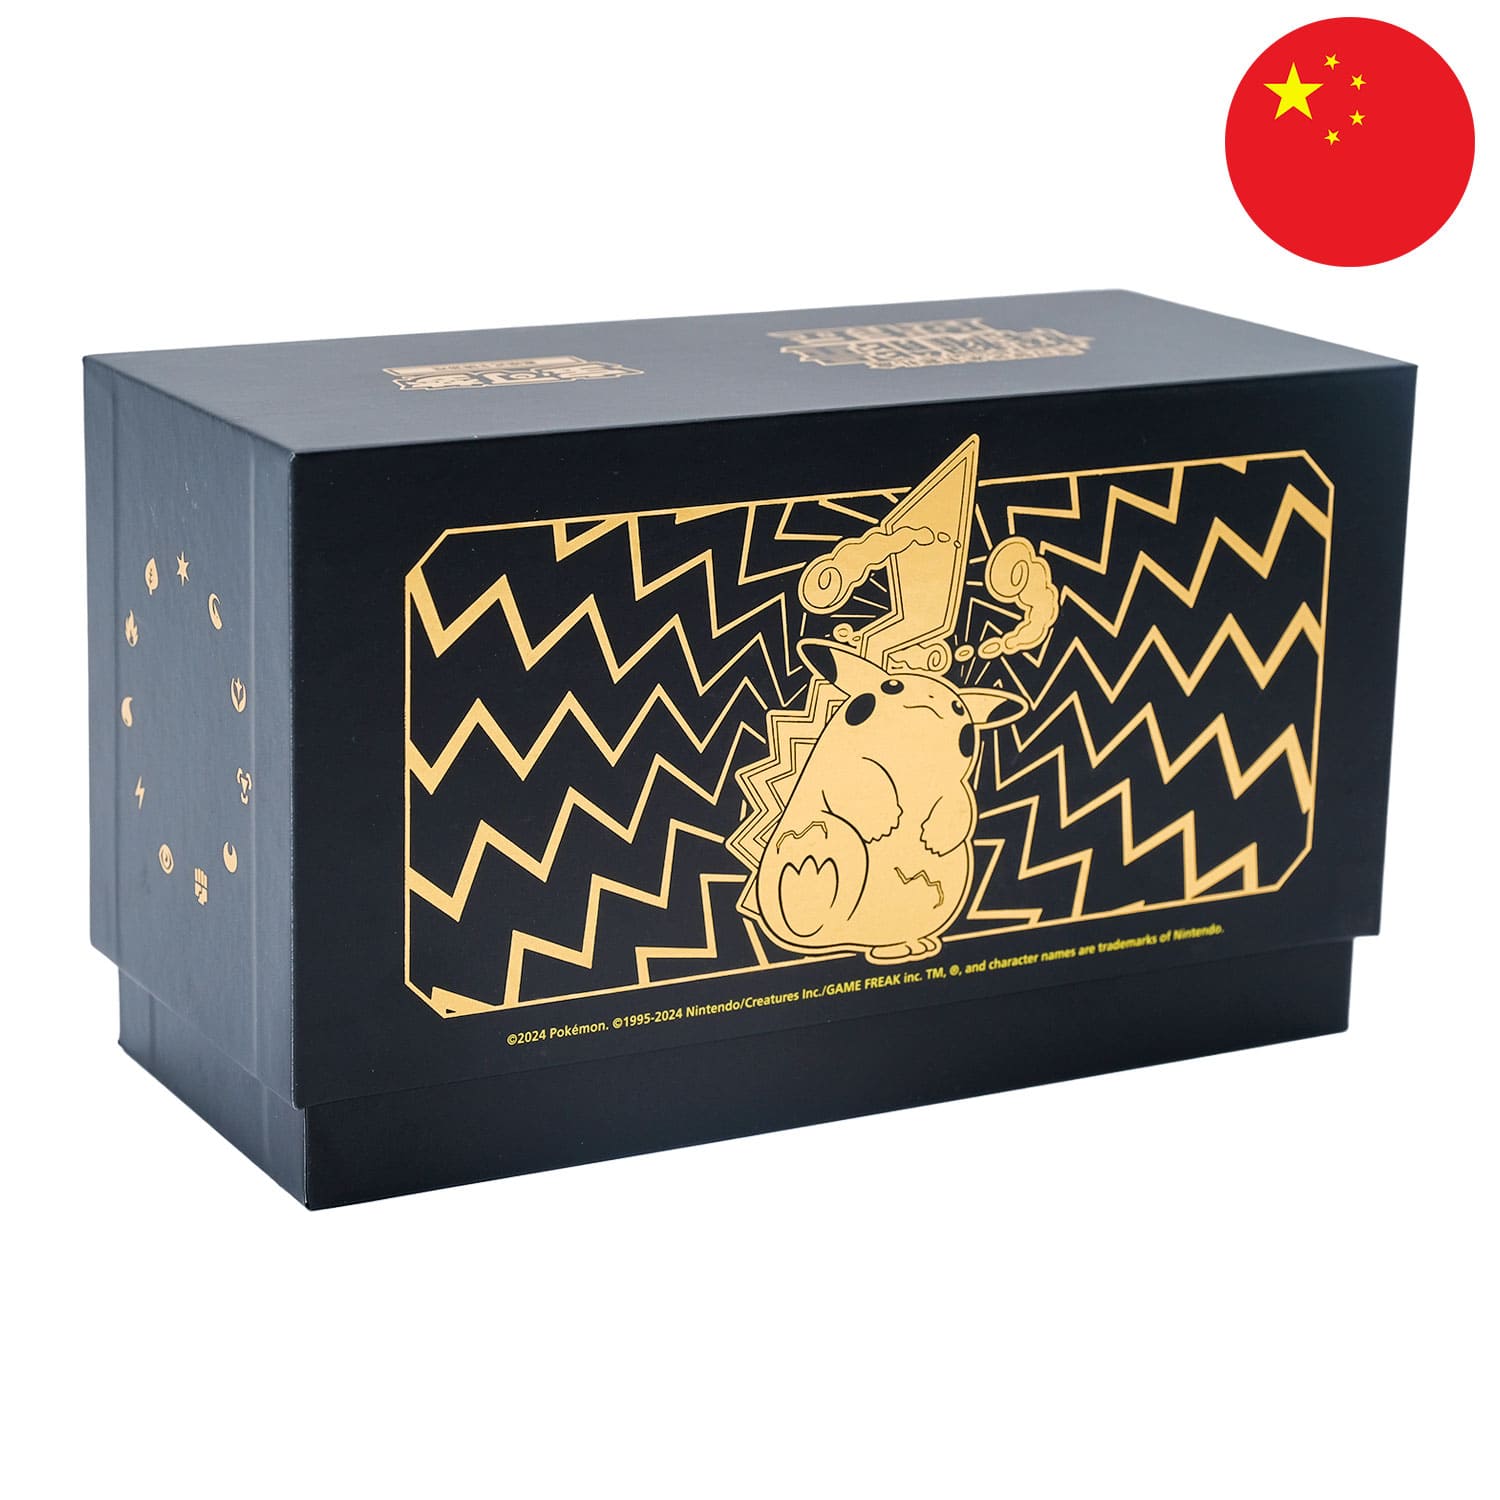 Die Pokemon Radiant Energy Box Pikachu (CSK1), frontal&schräg als Hauptbild, mit der Flagge Chinas in der Ecke.